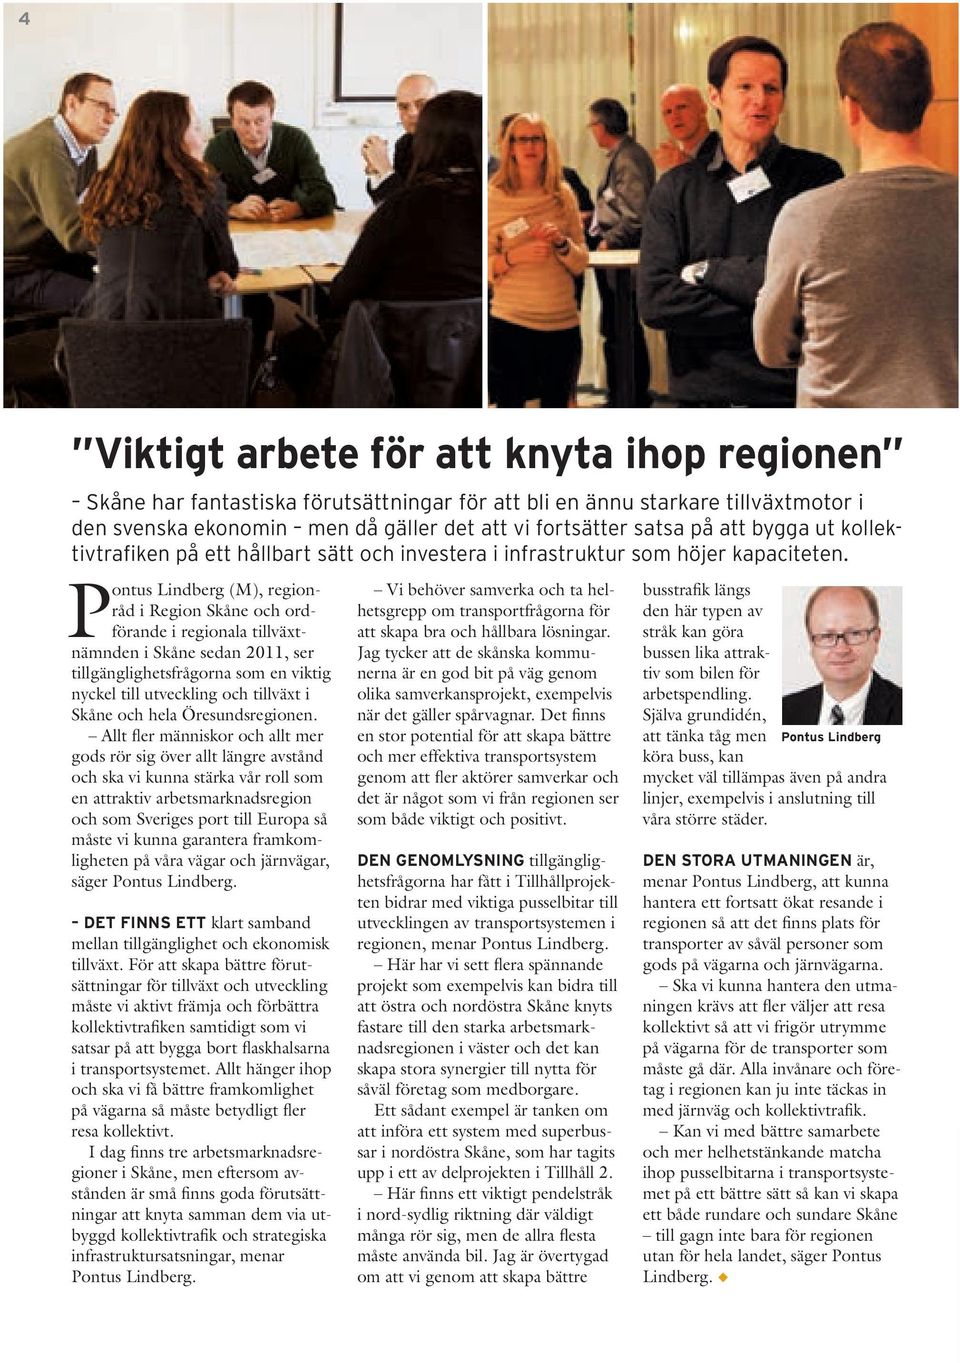 Pontus Lindberg (M), regionråd i Region Skåne och ordförande i regionala tillväxtnämnden i Skåne sedan 2011, ser tillgänglighetsfrågorna som en viktig nyckel till utveckling och tillväxt i Skåne och